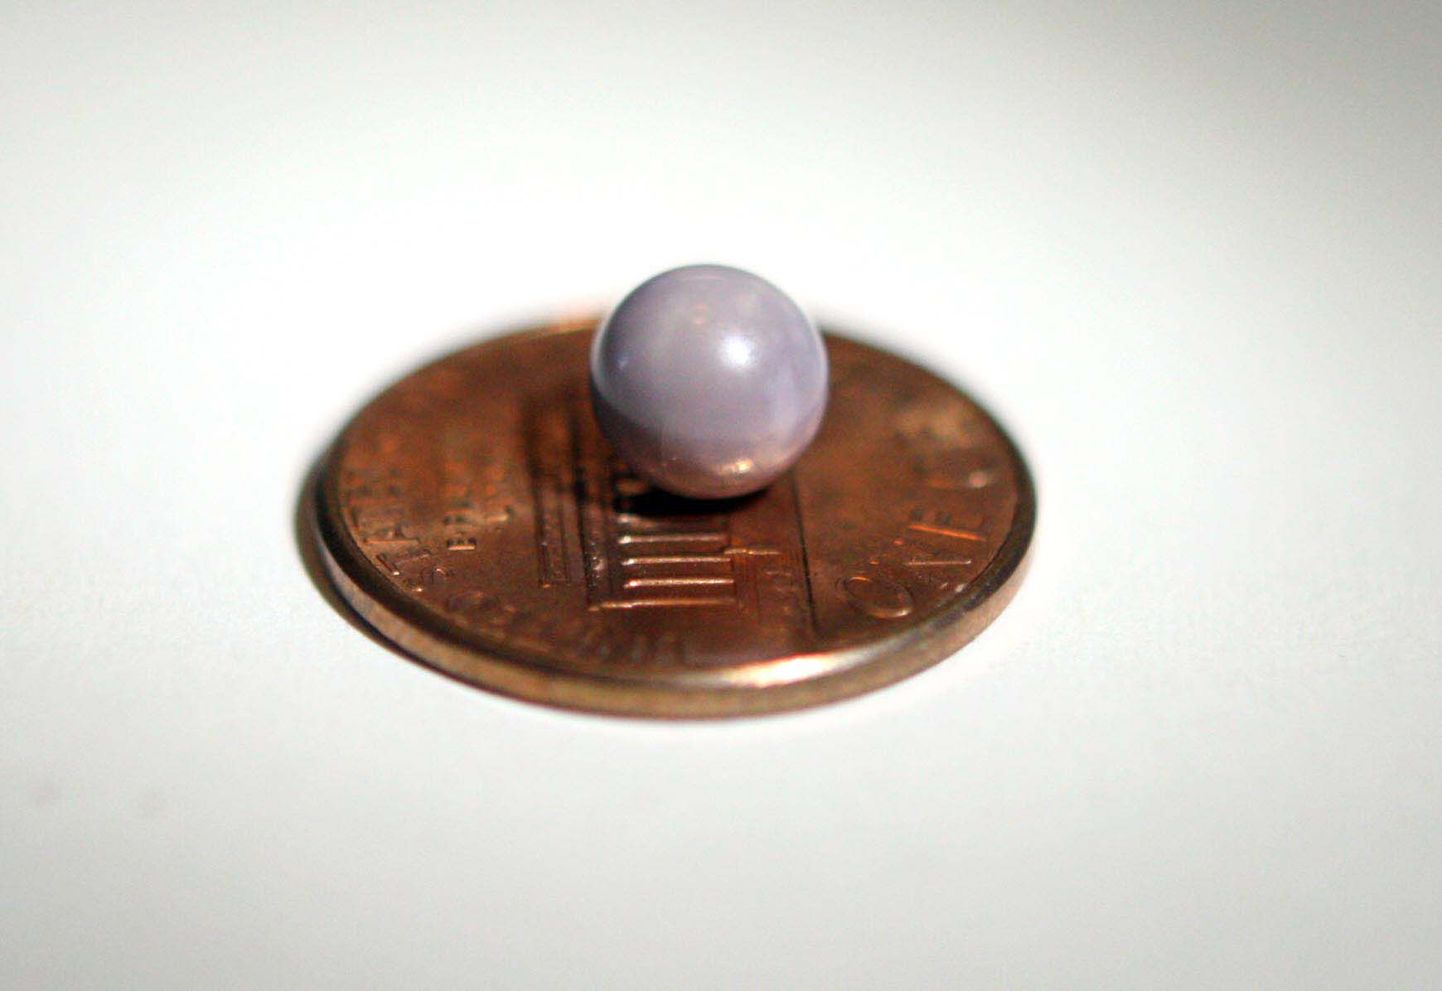 Merekarbist leitud violetne pärl jääb pärlitööpäevaliste jaoks paraku unistuseks.